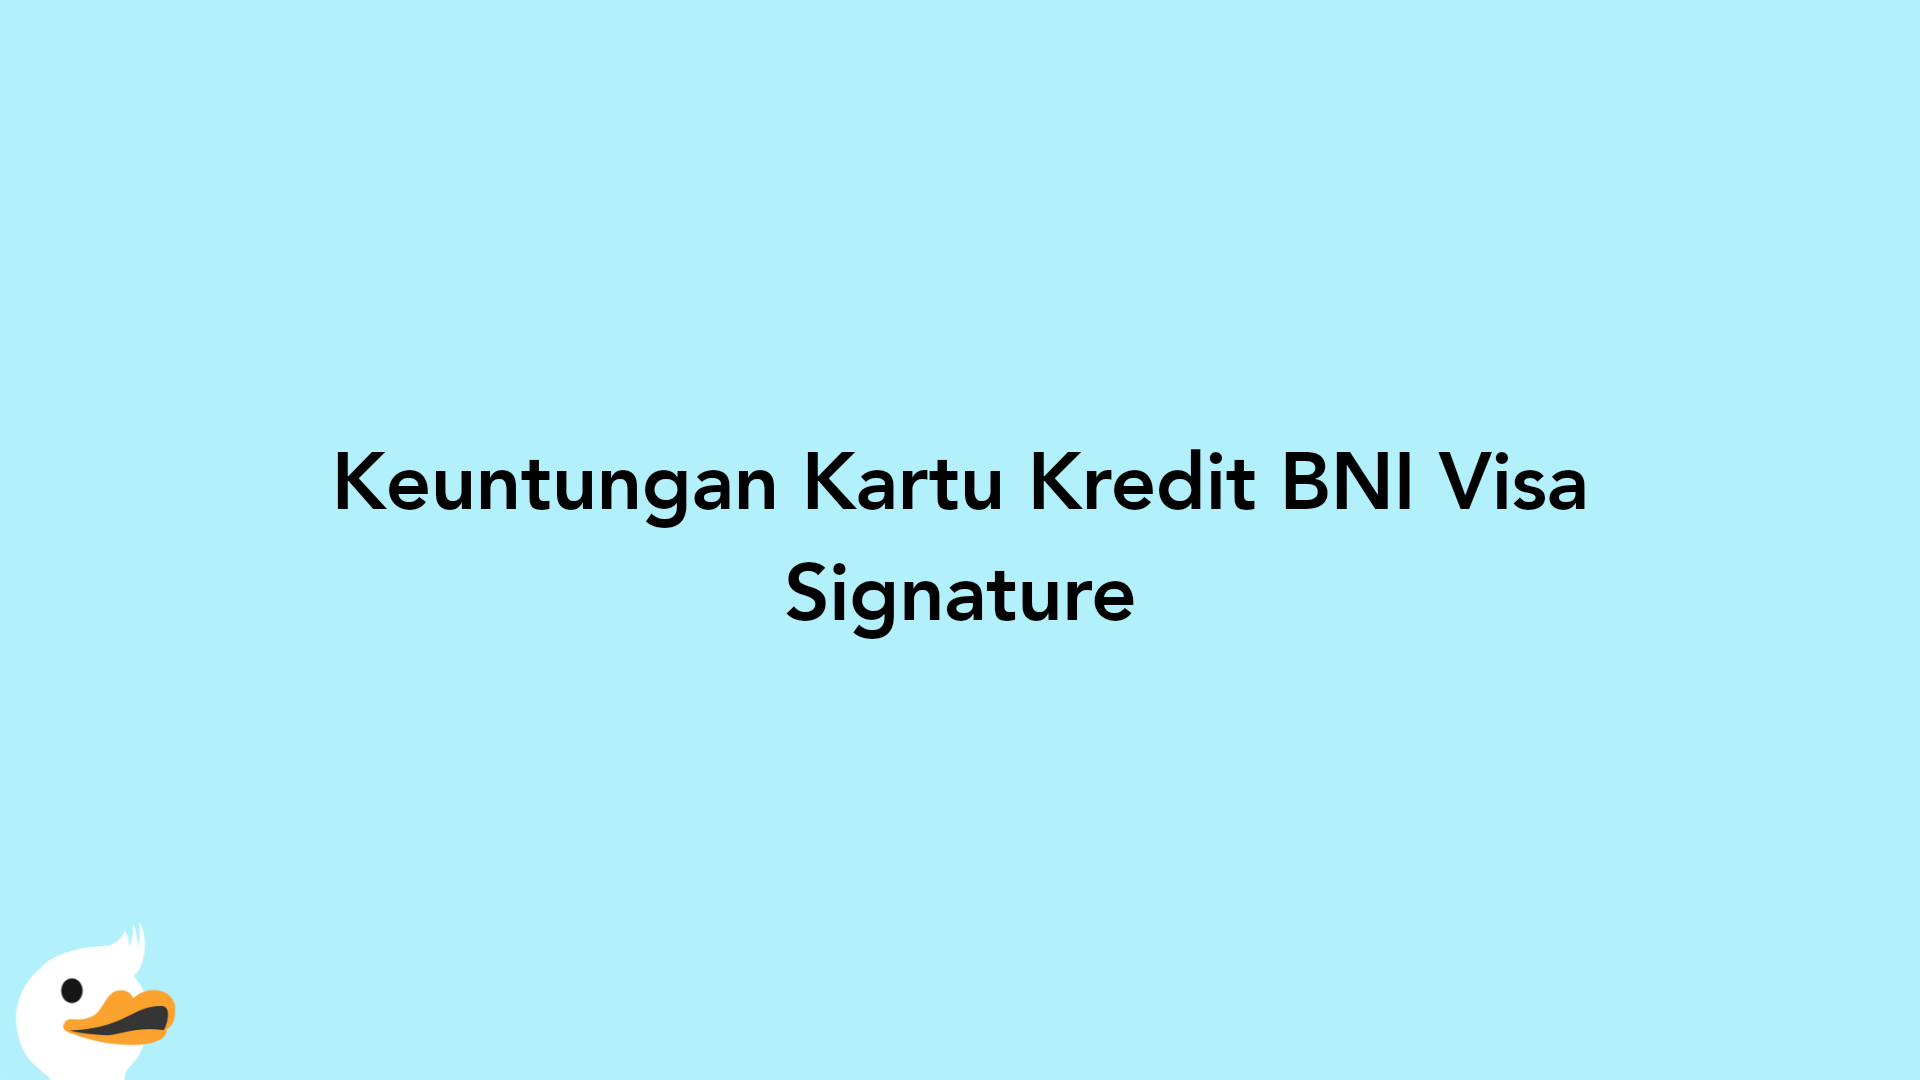 Keuntungan Kartu Kredit BNI Visa Signature